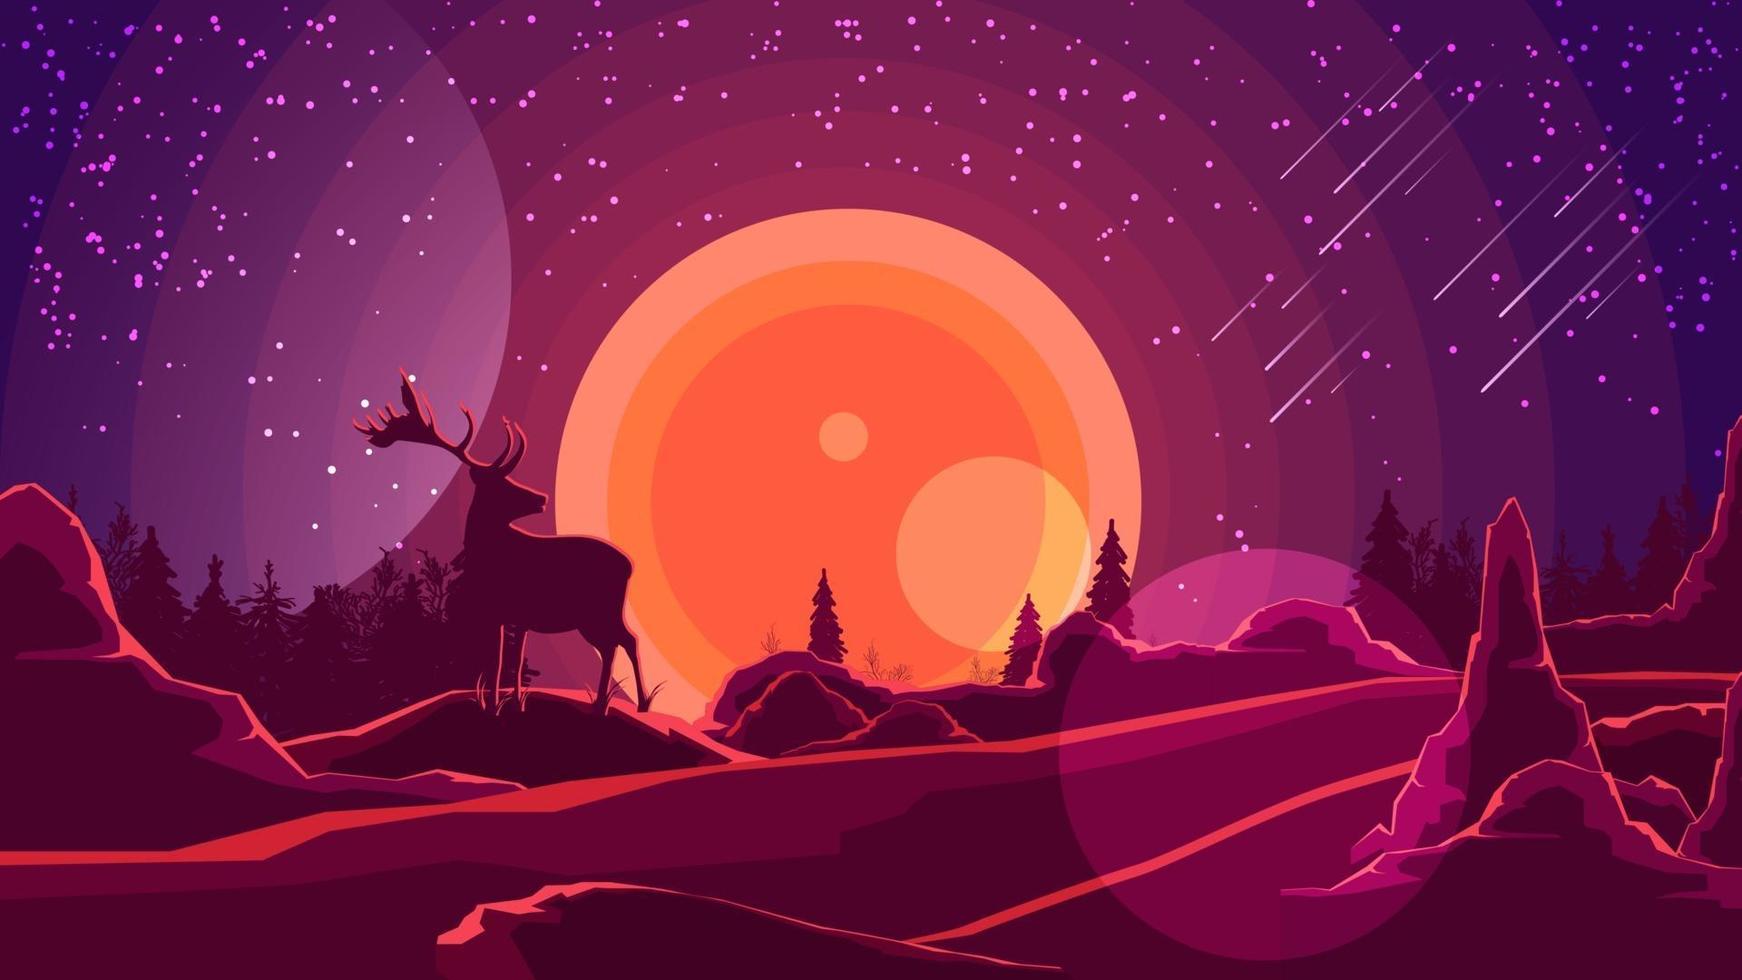 Landschaft mit Sonnenuntergang hinter den Bergen, Wald, Silhouette eines Hirsches und Sternenhimmel auf lila Himmel. Vektorillustration. vektor